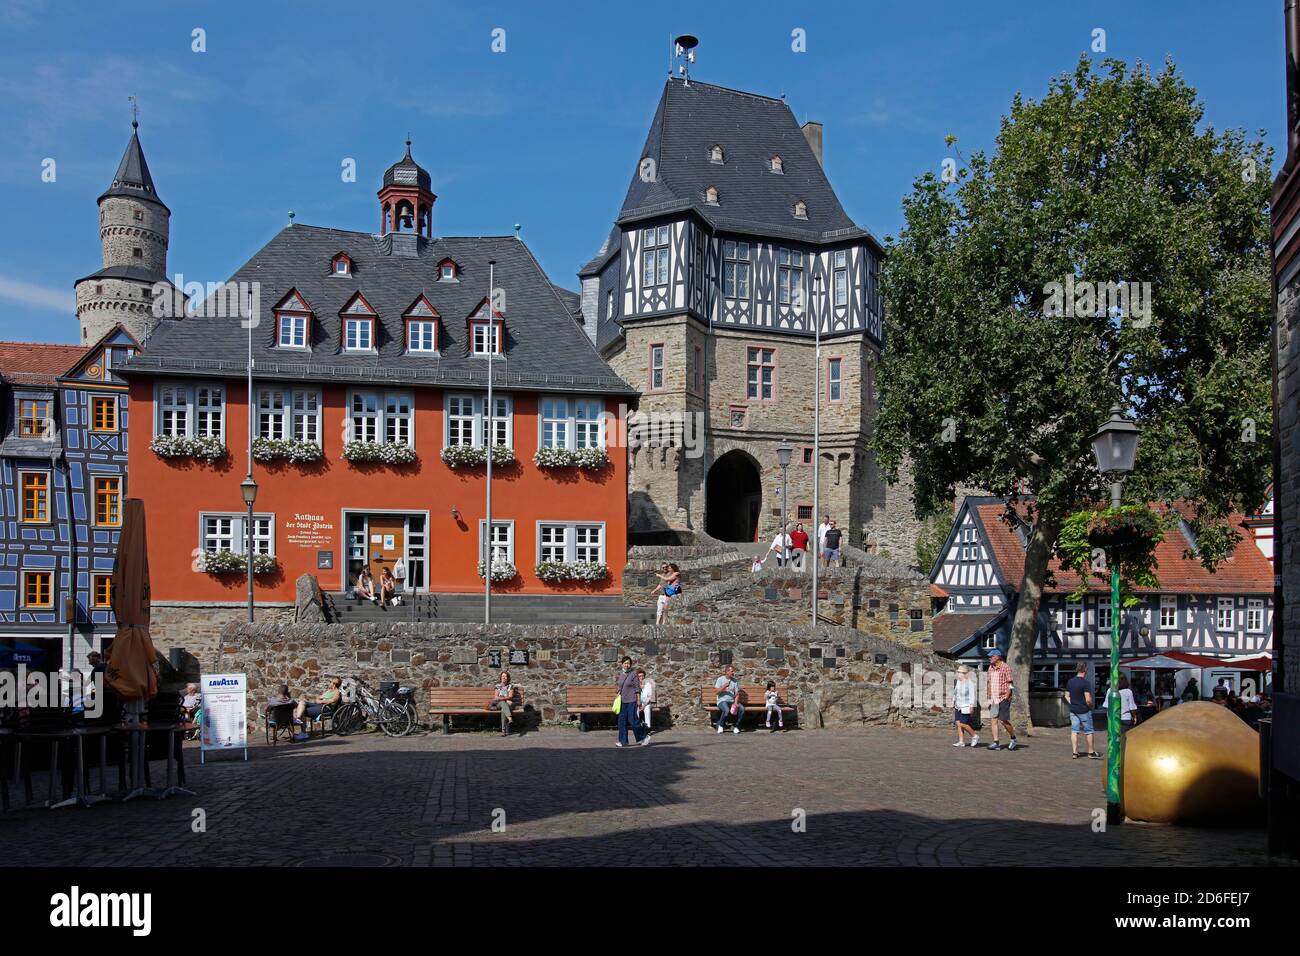 Casco antiguo, plaza del mercado, ayuntamiento, casa de croked, casa de entrada del distrito del castillo, torre de brujas, Idstein, Hesse, Alemania Foto de stock